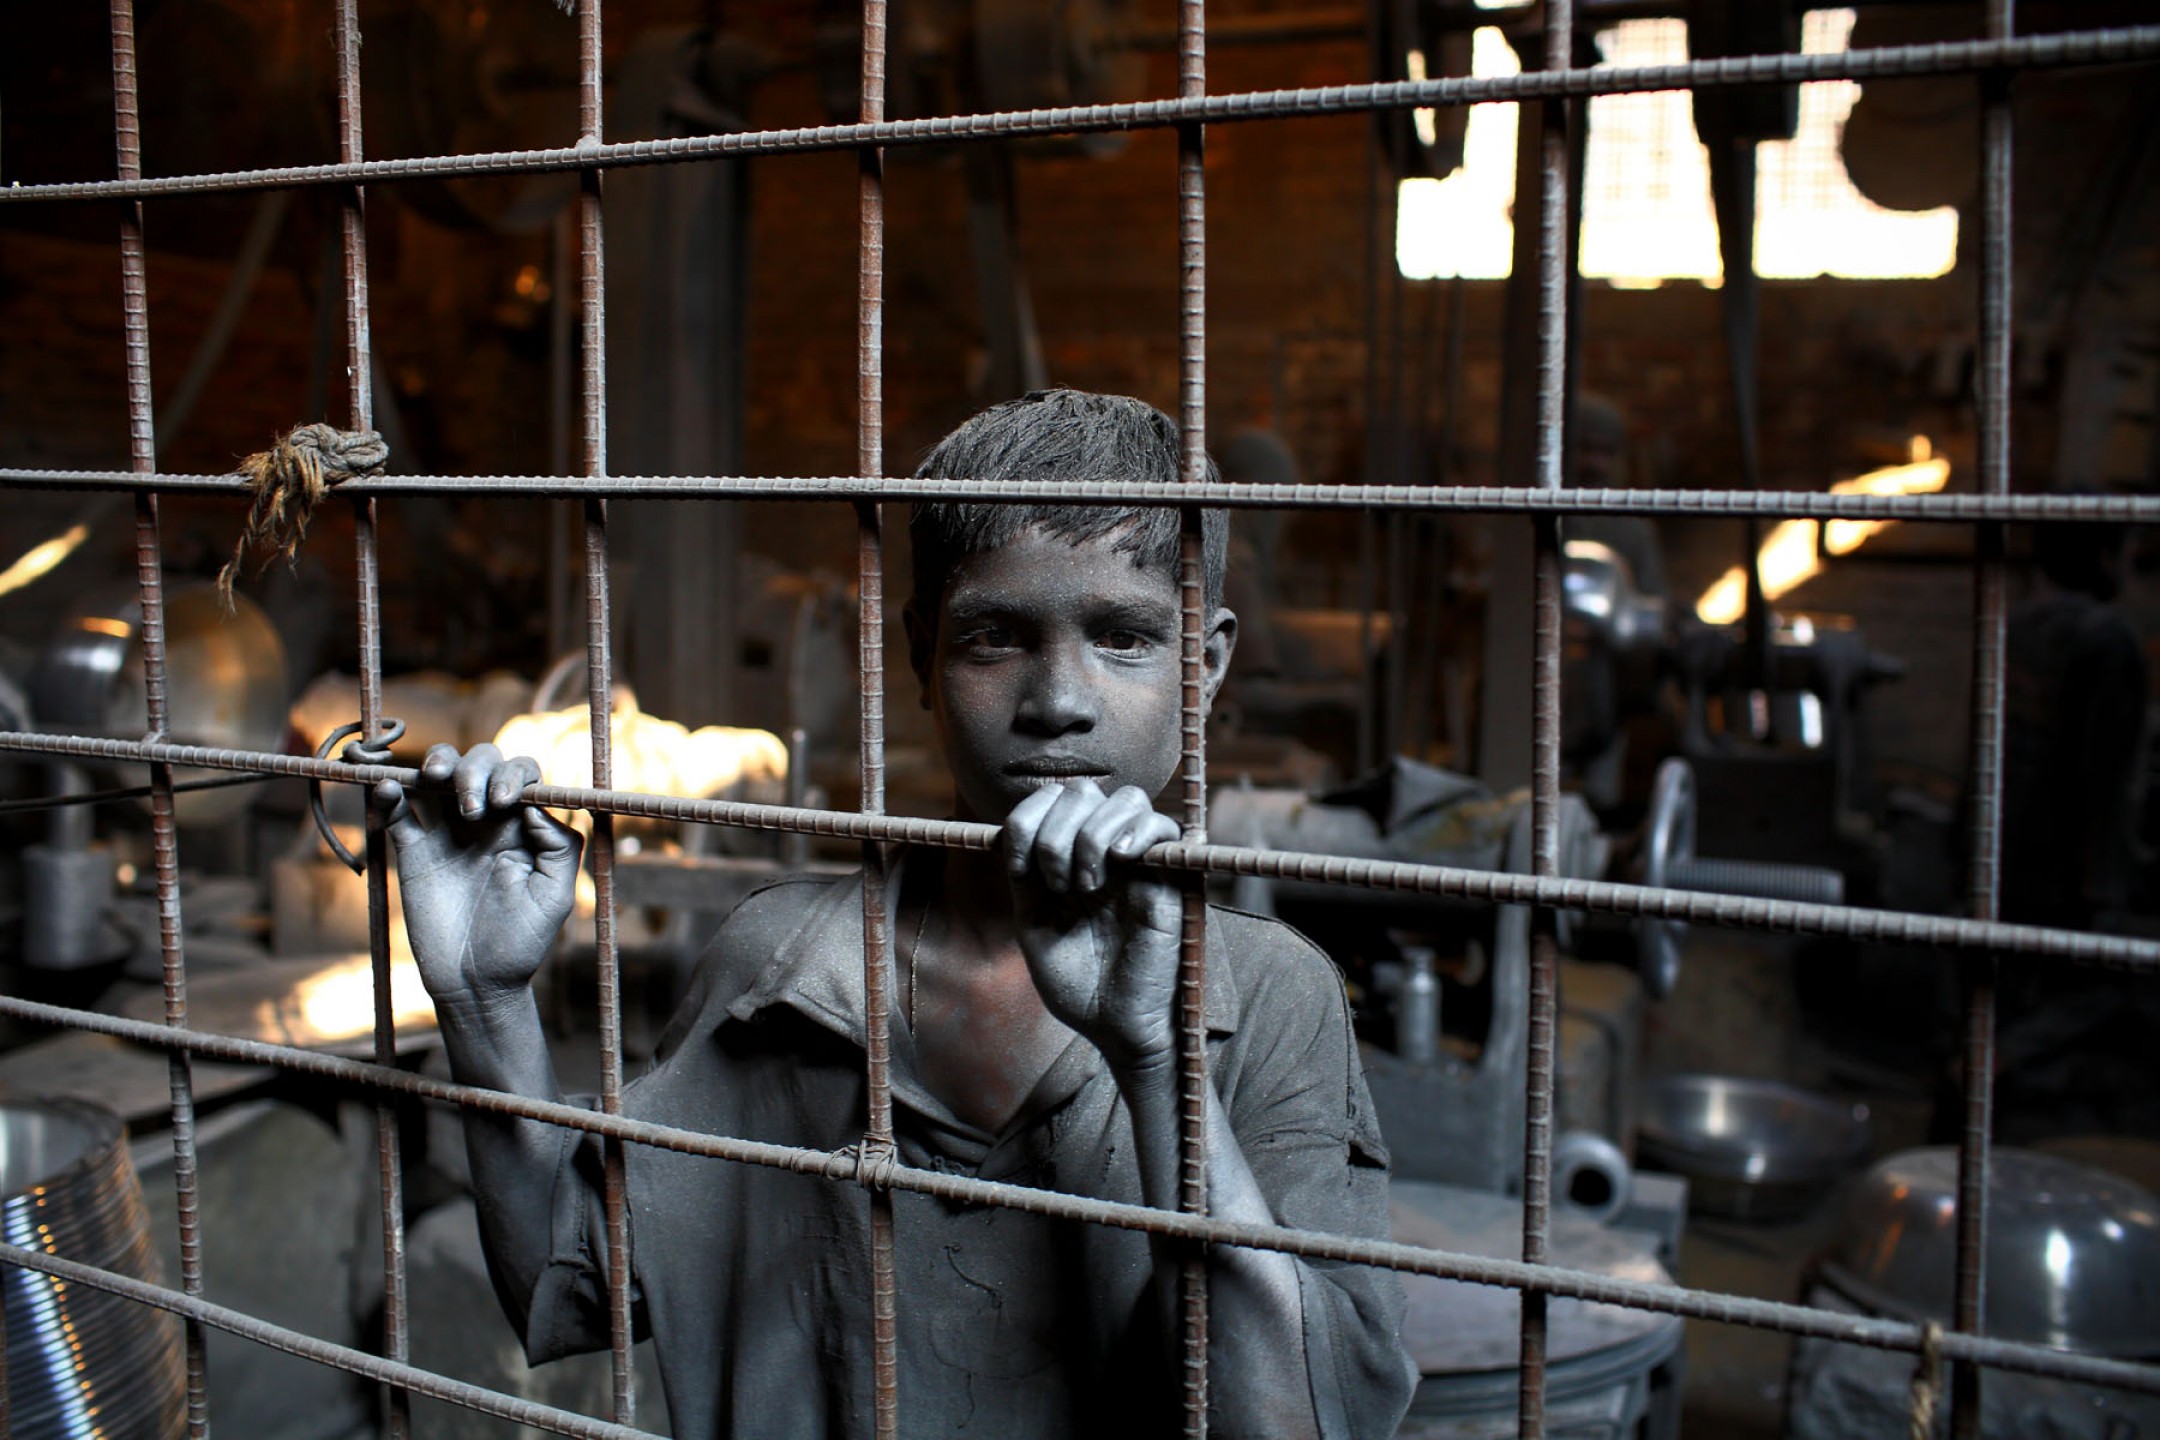 Дети в клетках 3. Ребенок за решеткой. Рабский труд детей. Детский рабский труд в современном мире. Тюрьма для детей.